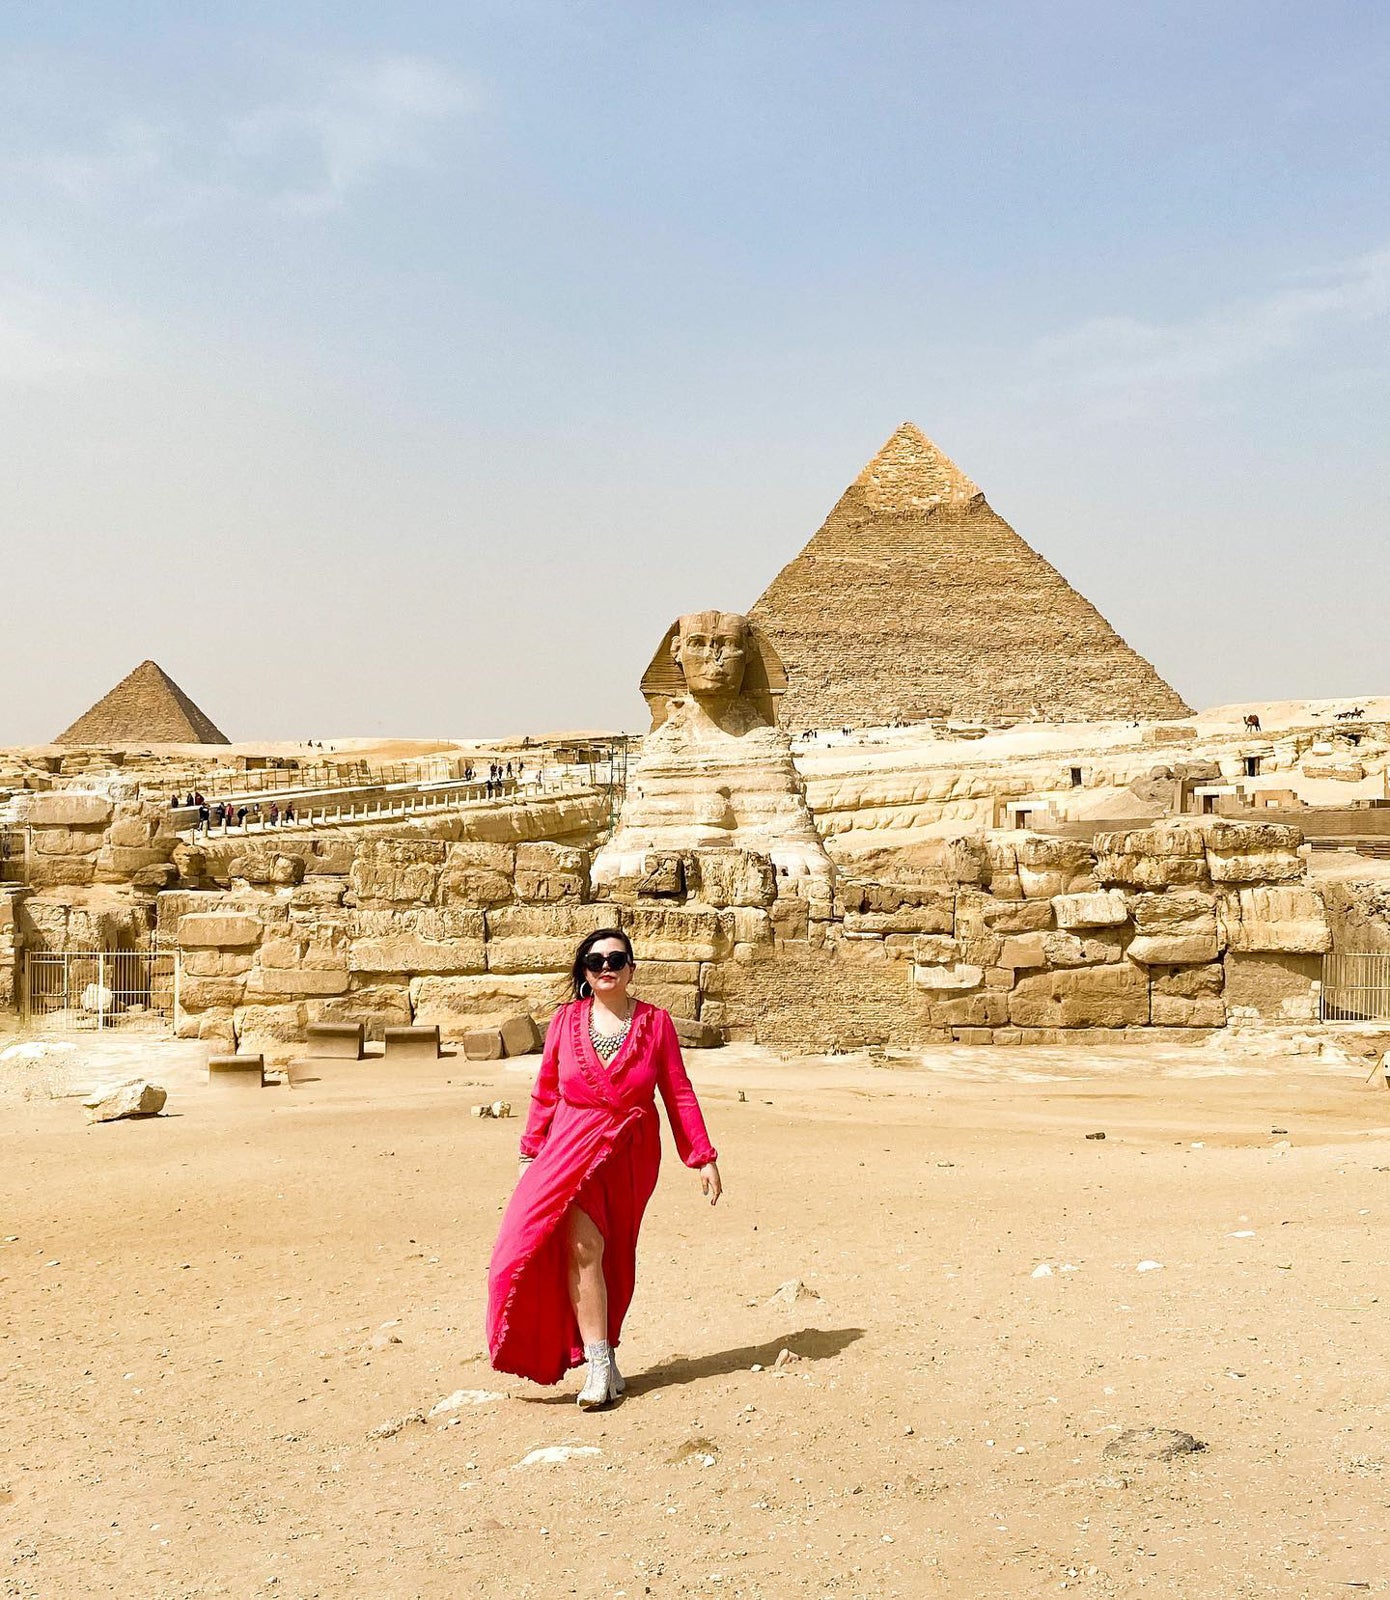 Everything I Wish I Knew Before Traveling to Egypt